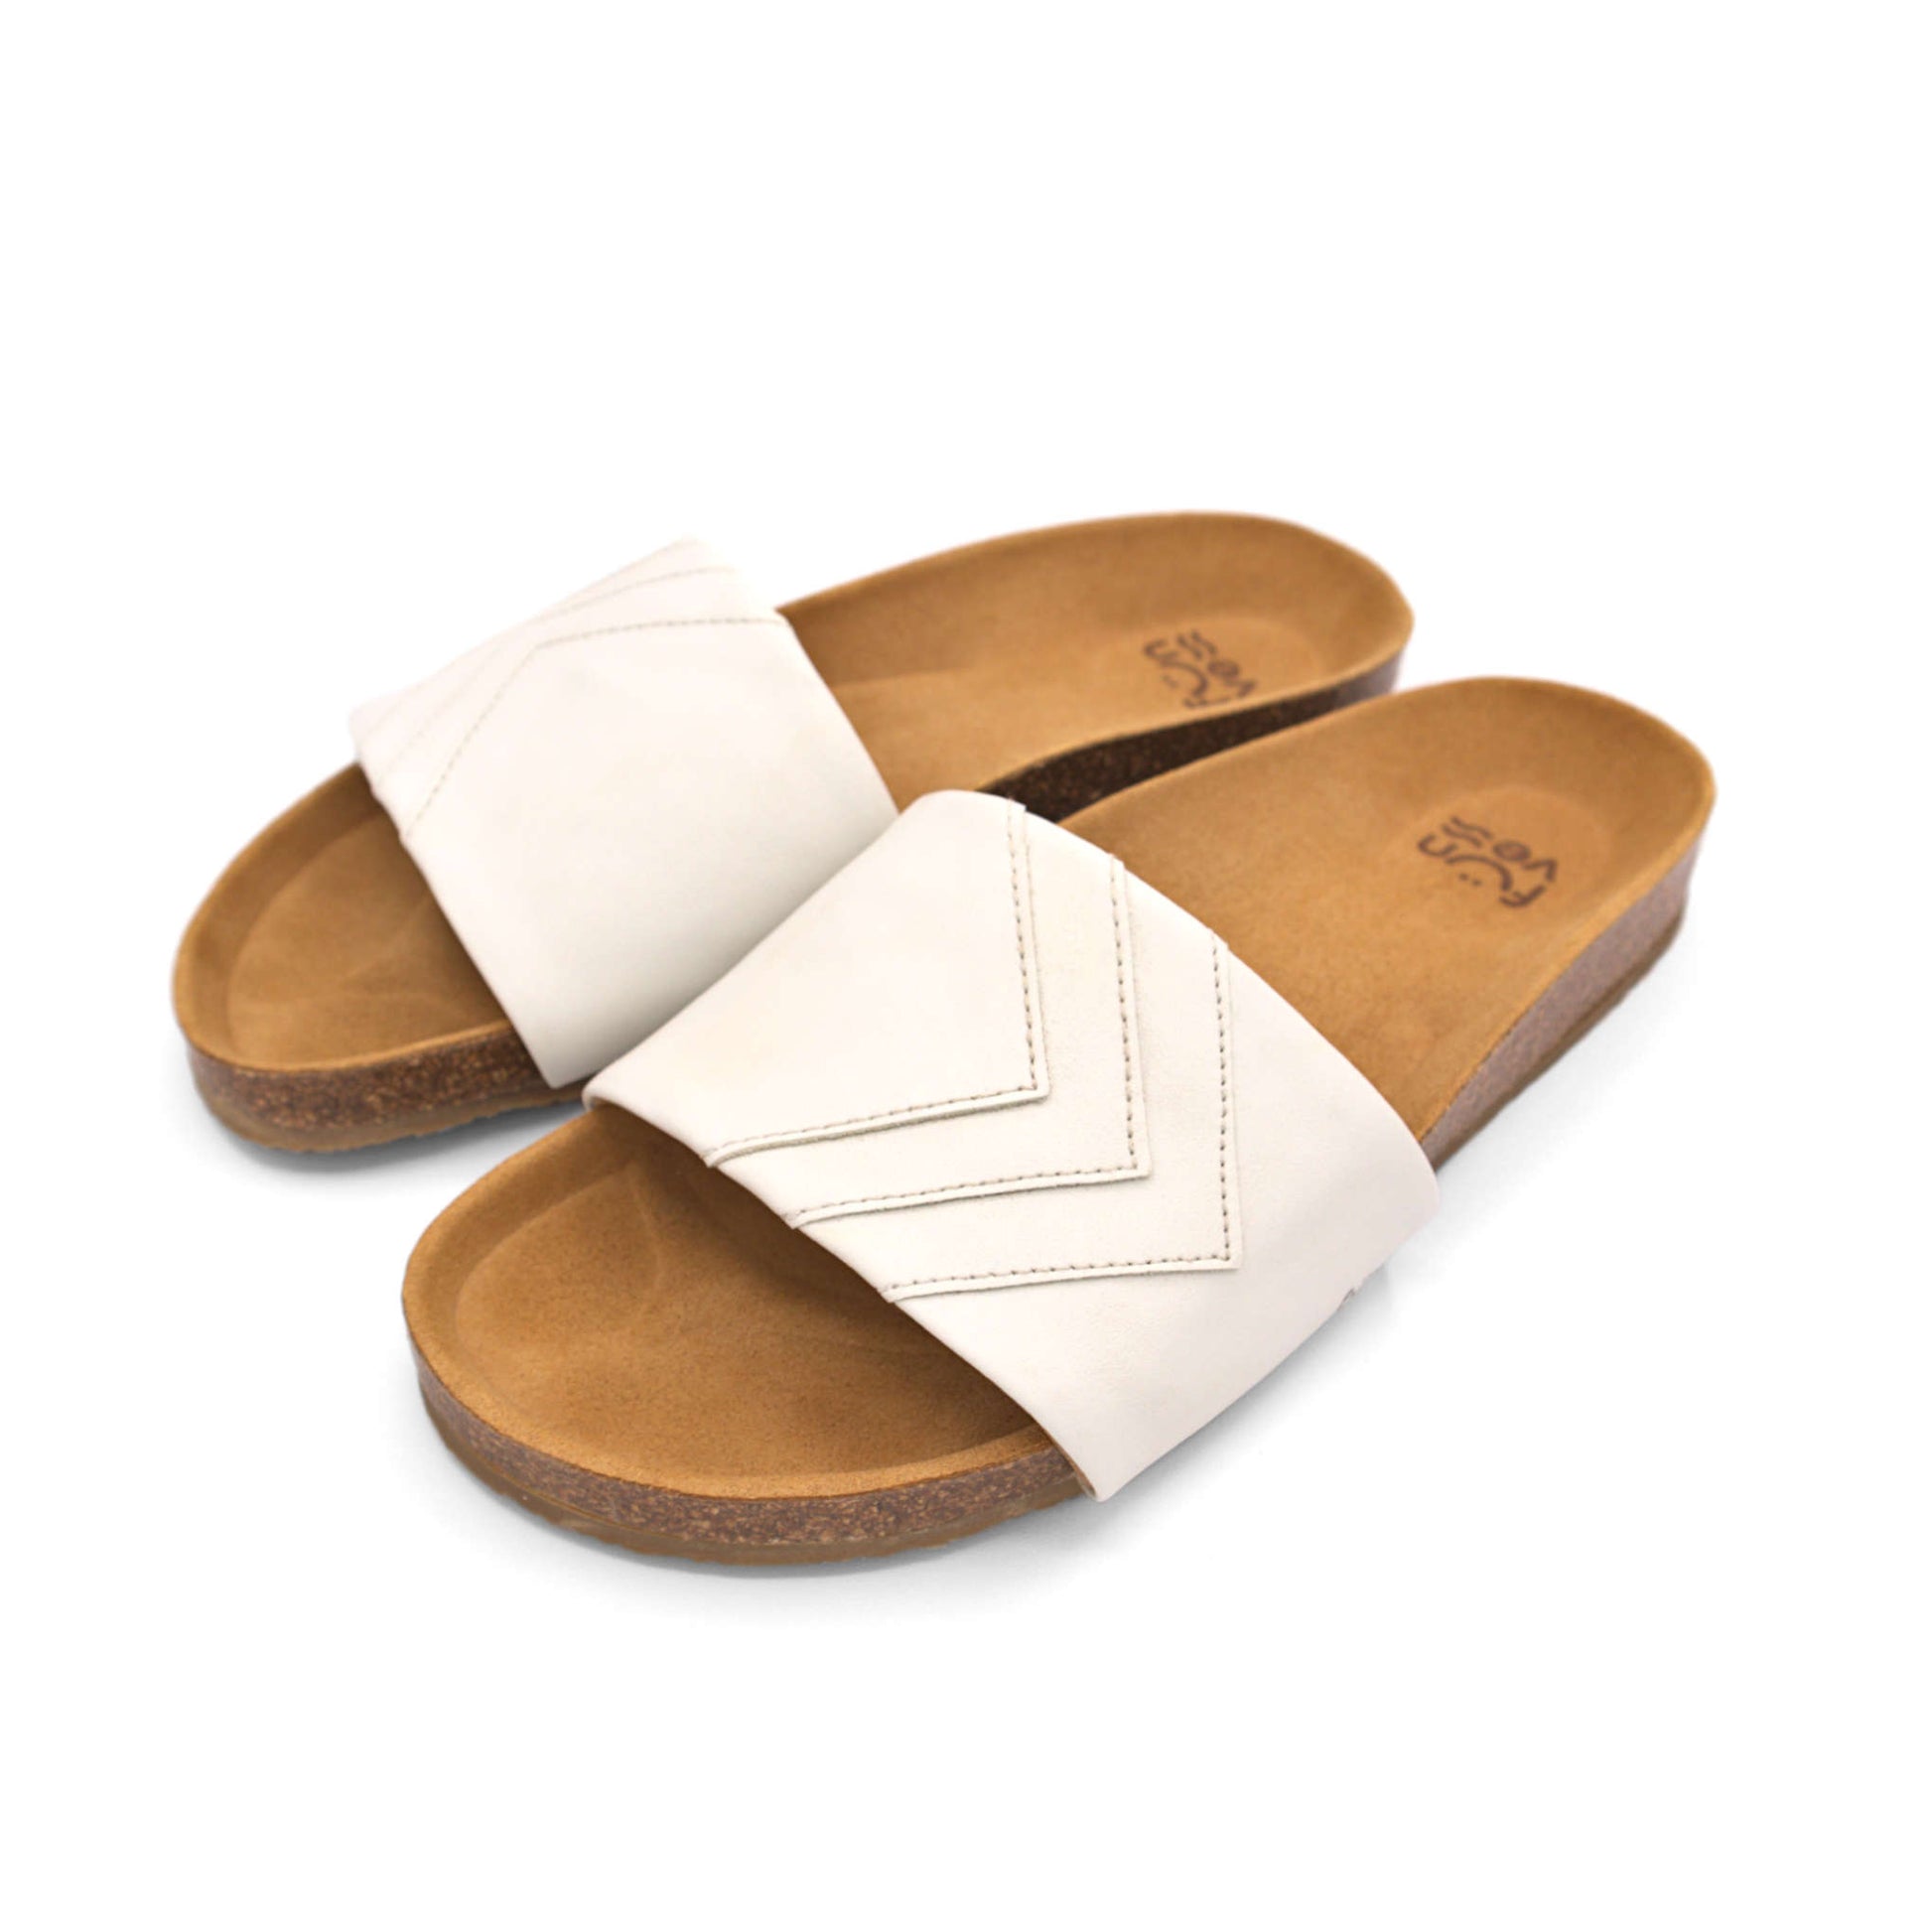 Weiße Sandalen; vegan mit Fußbett; monochrom einfarbig; Marke Fünve; Modell Yang; seitliche Perspektive